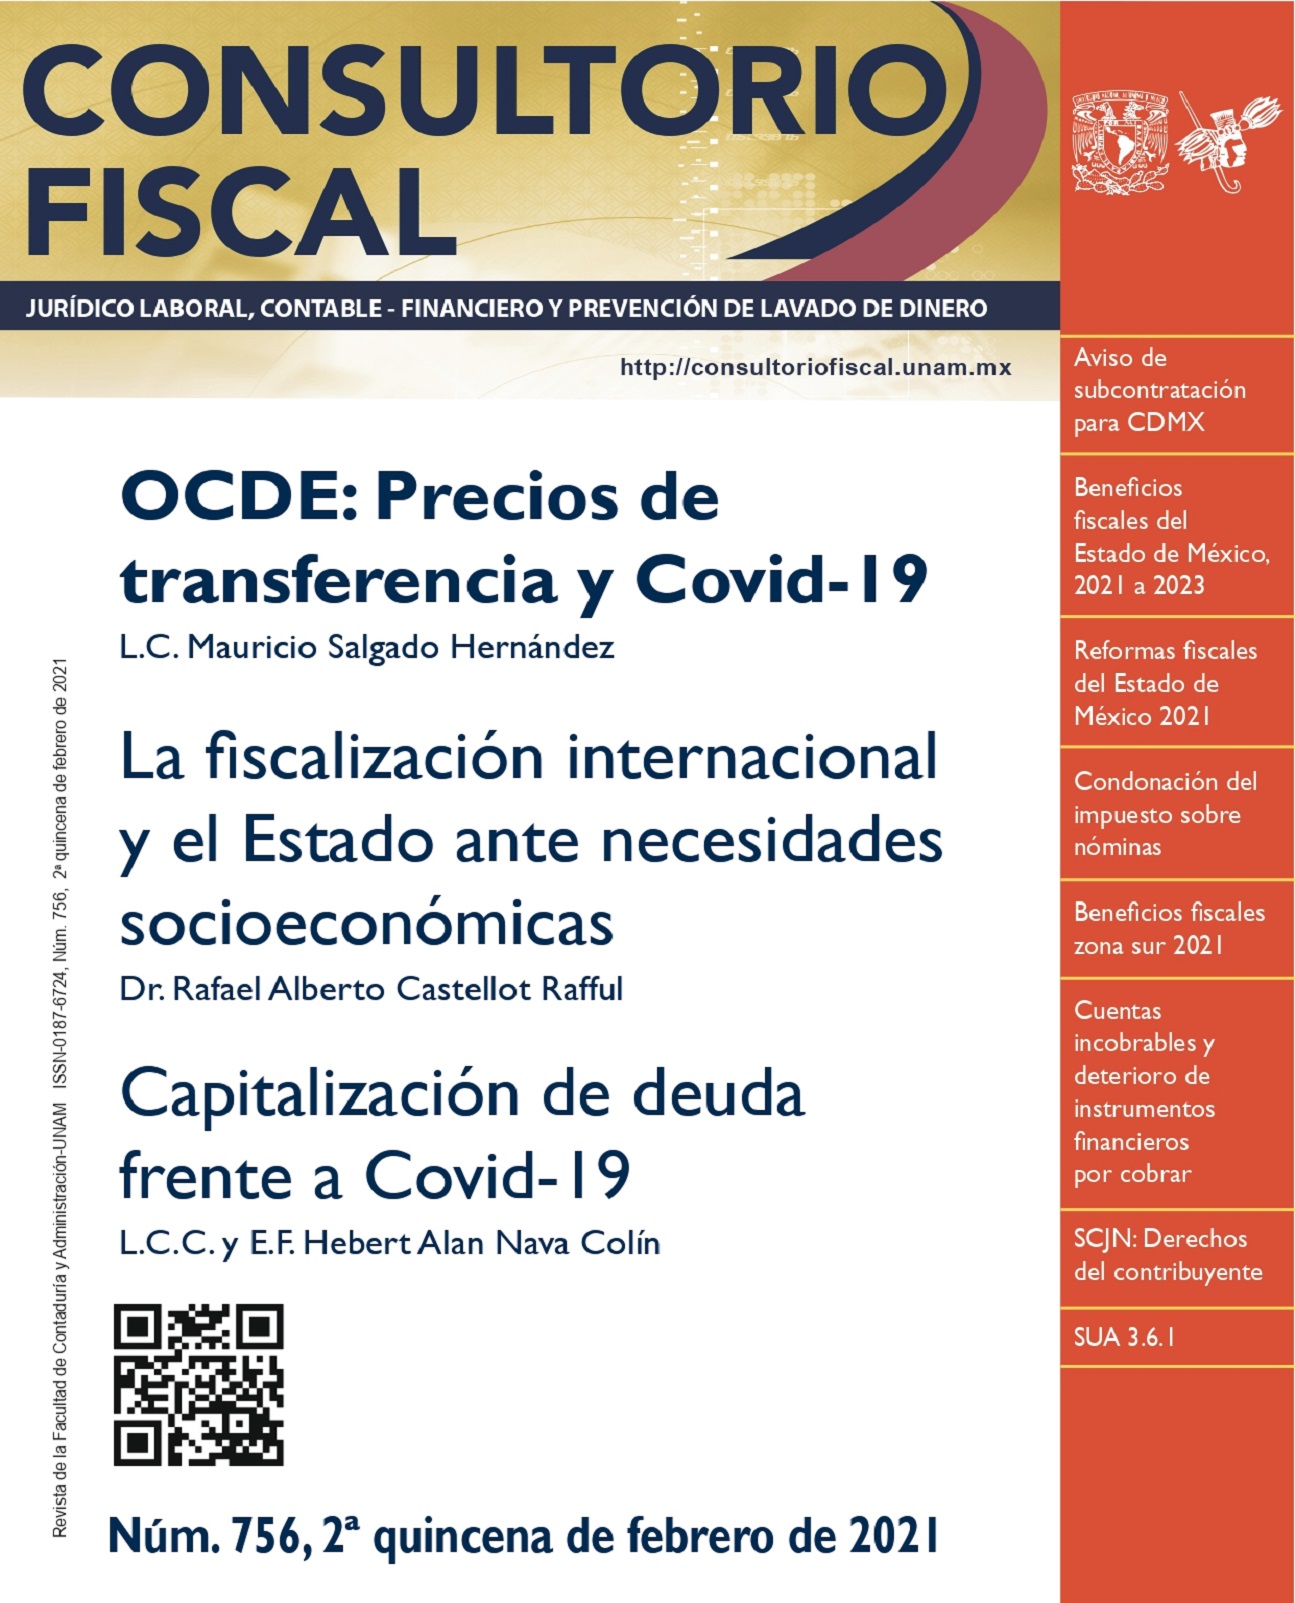 OCDE: Precios de transferencia y Covid-19